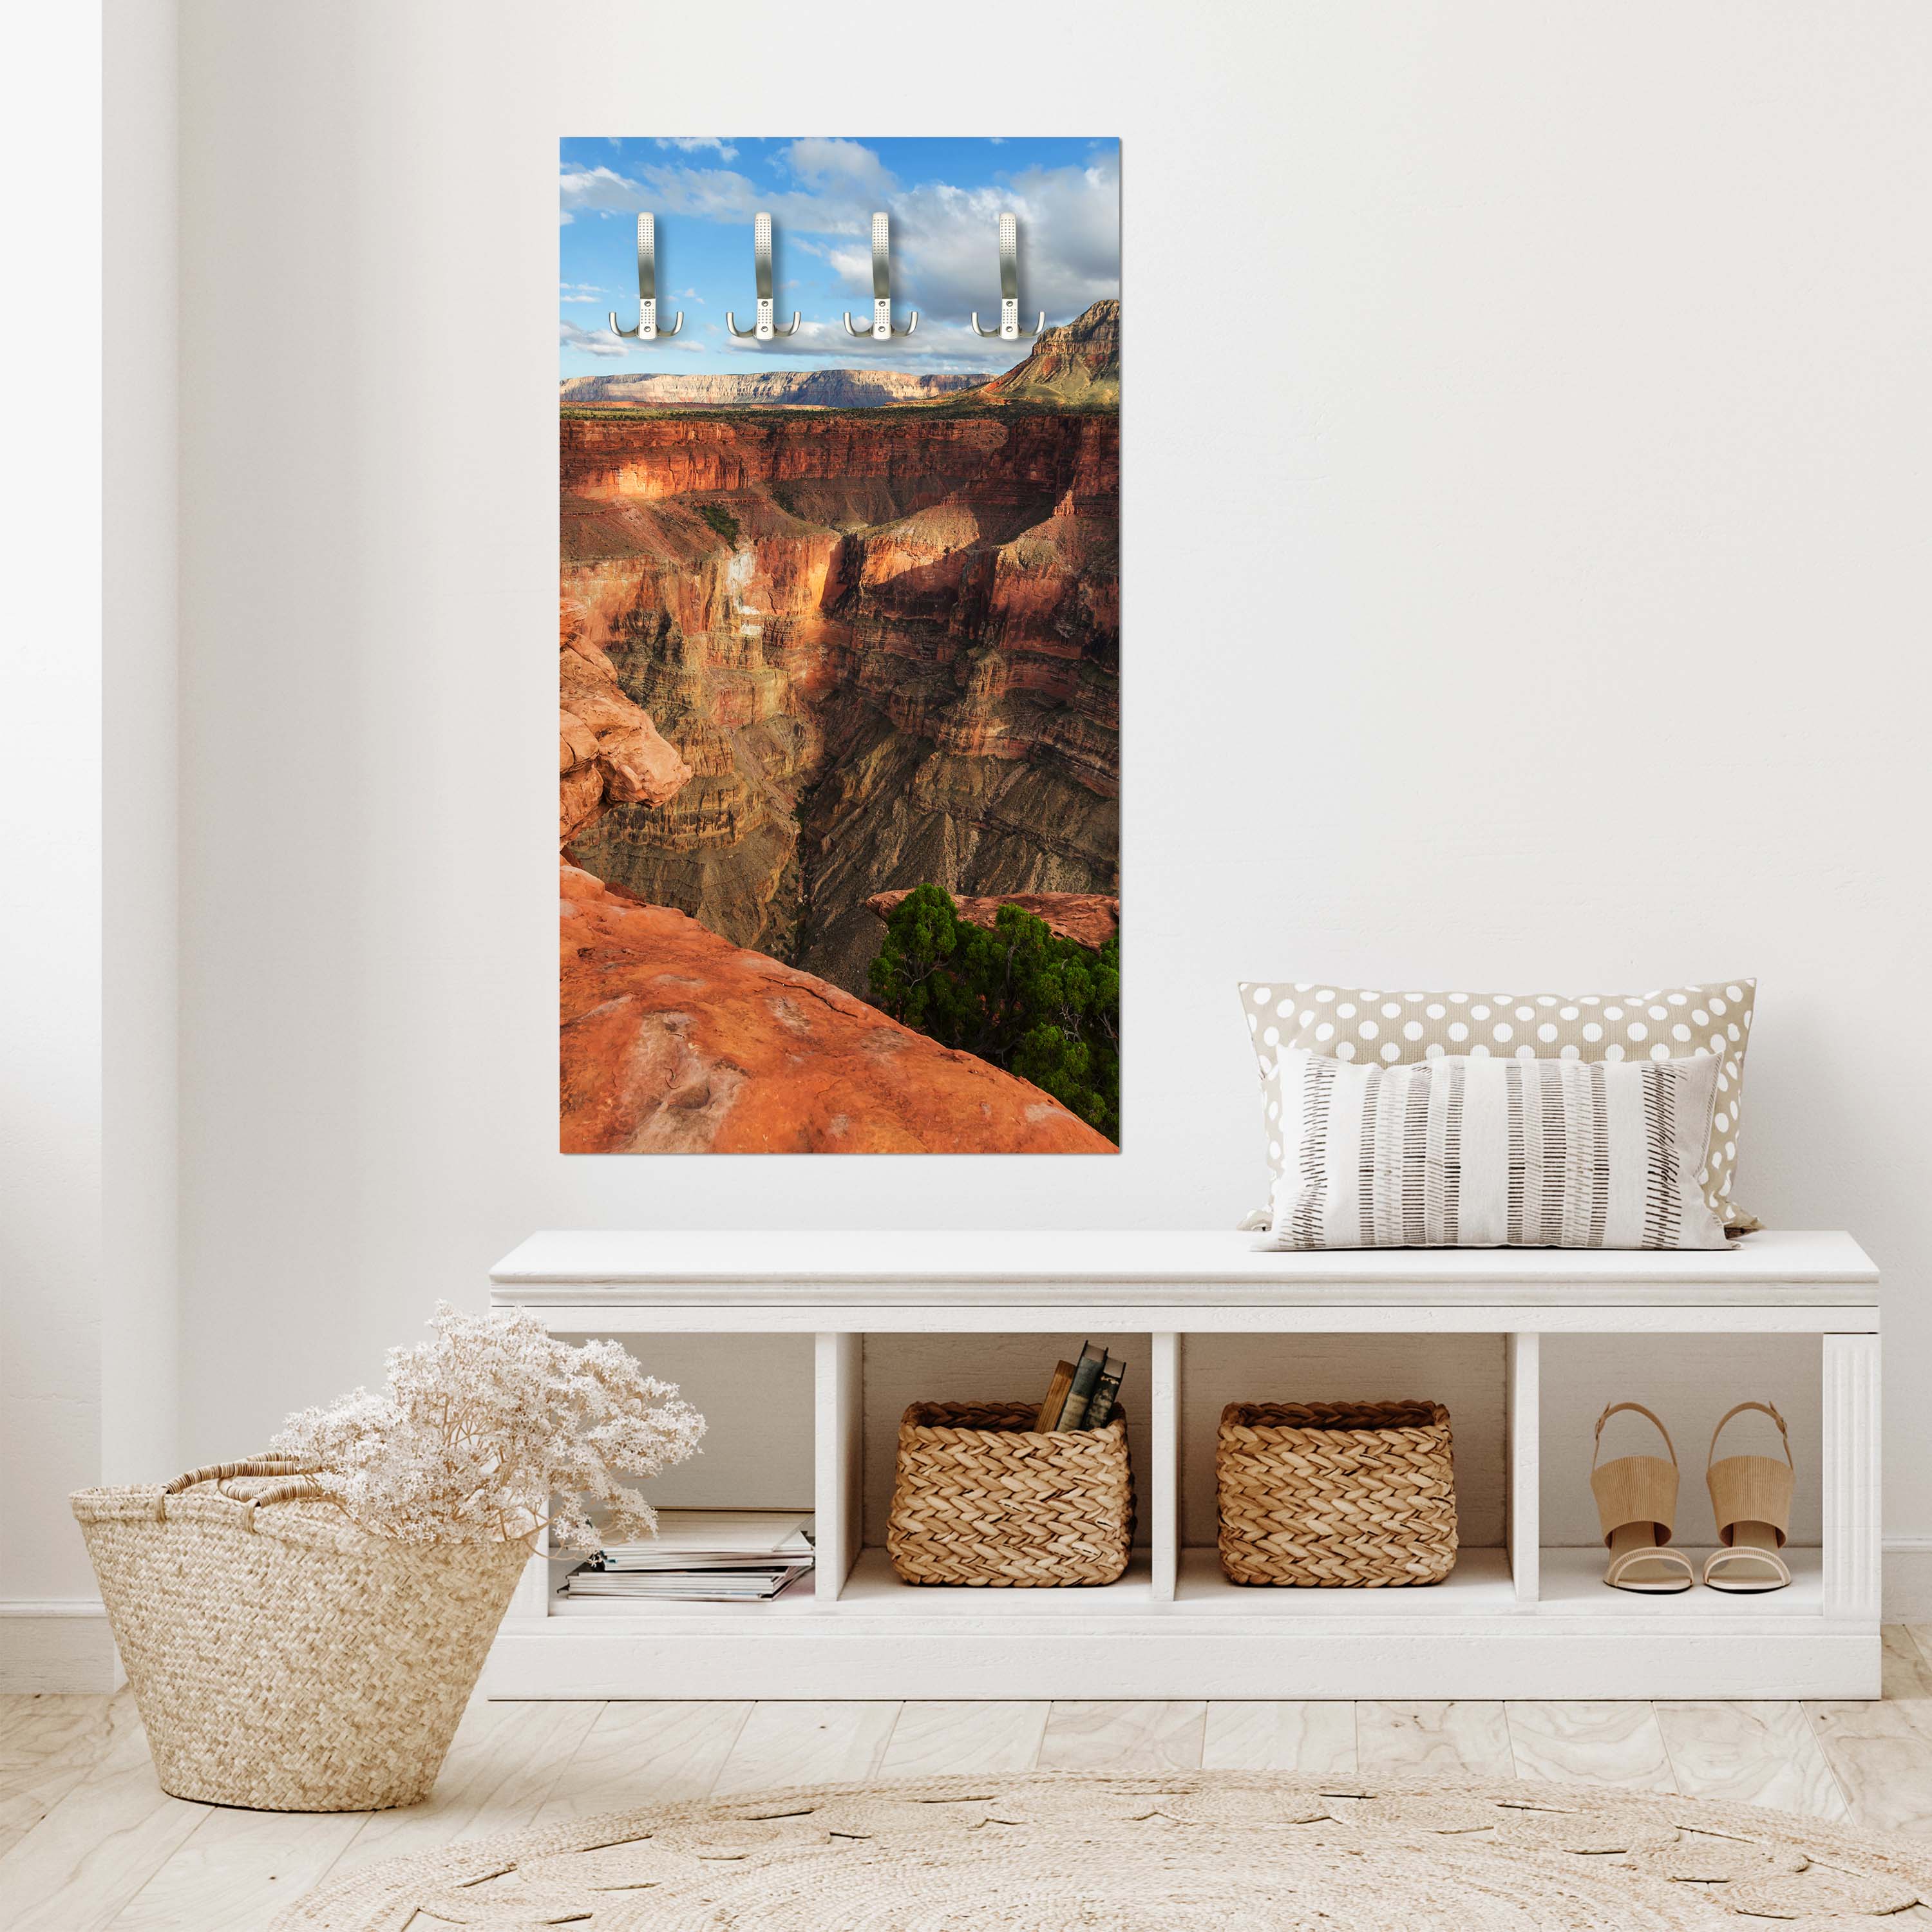 Garderobe Der Grand Canyon M1017 entdecken - Bild 5